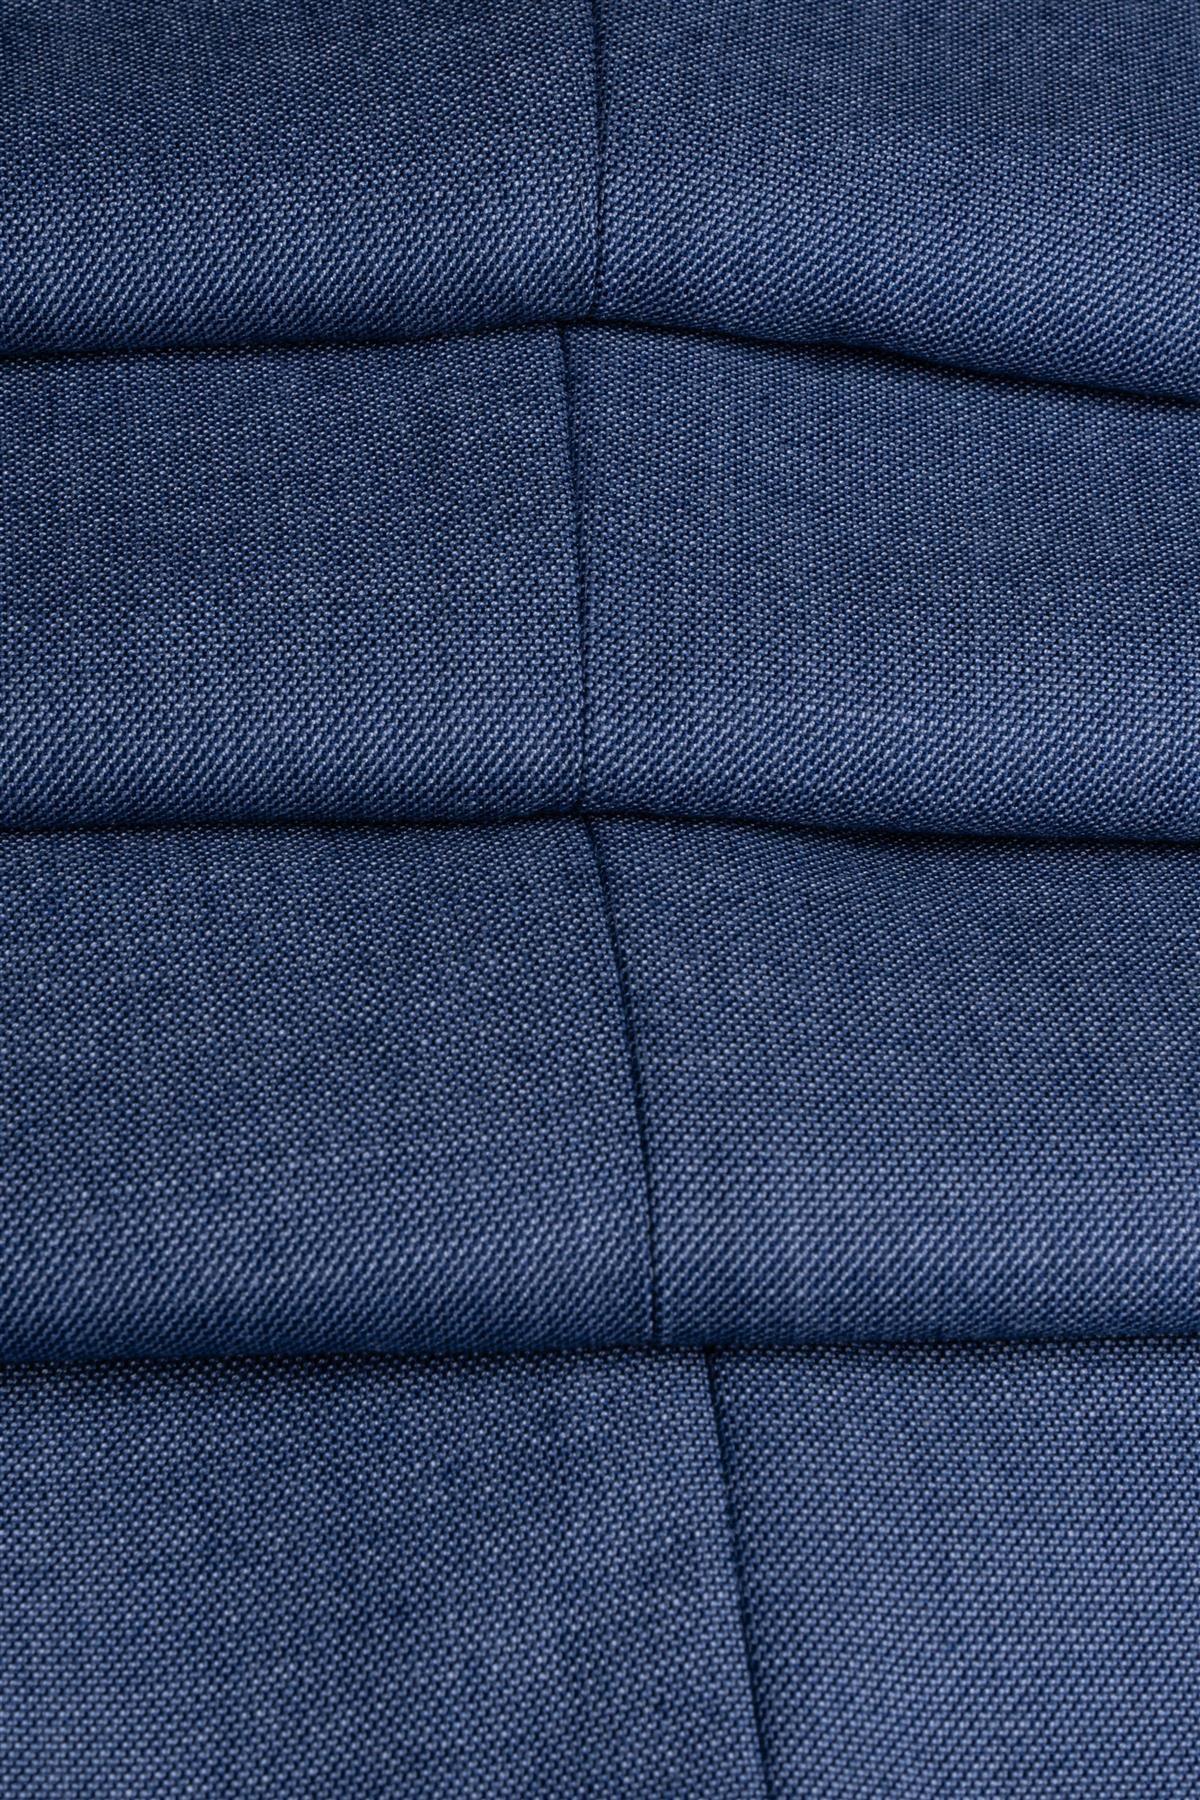 Blue Jay Suit Trousers